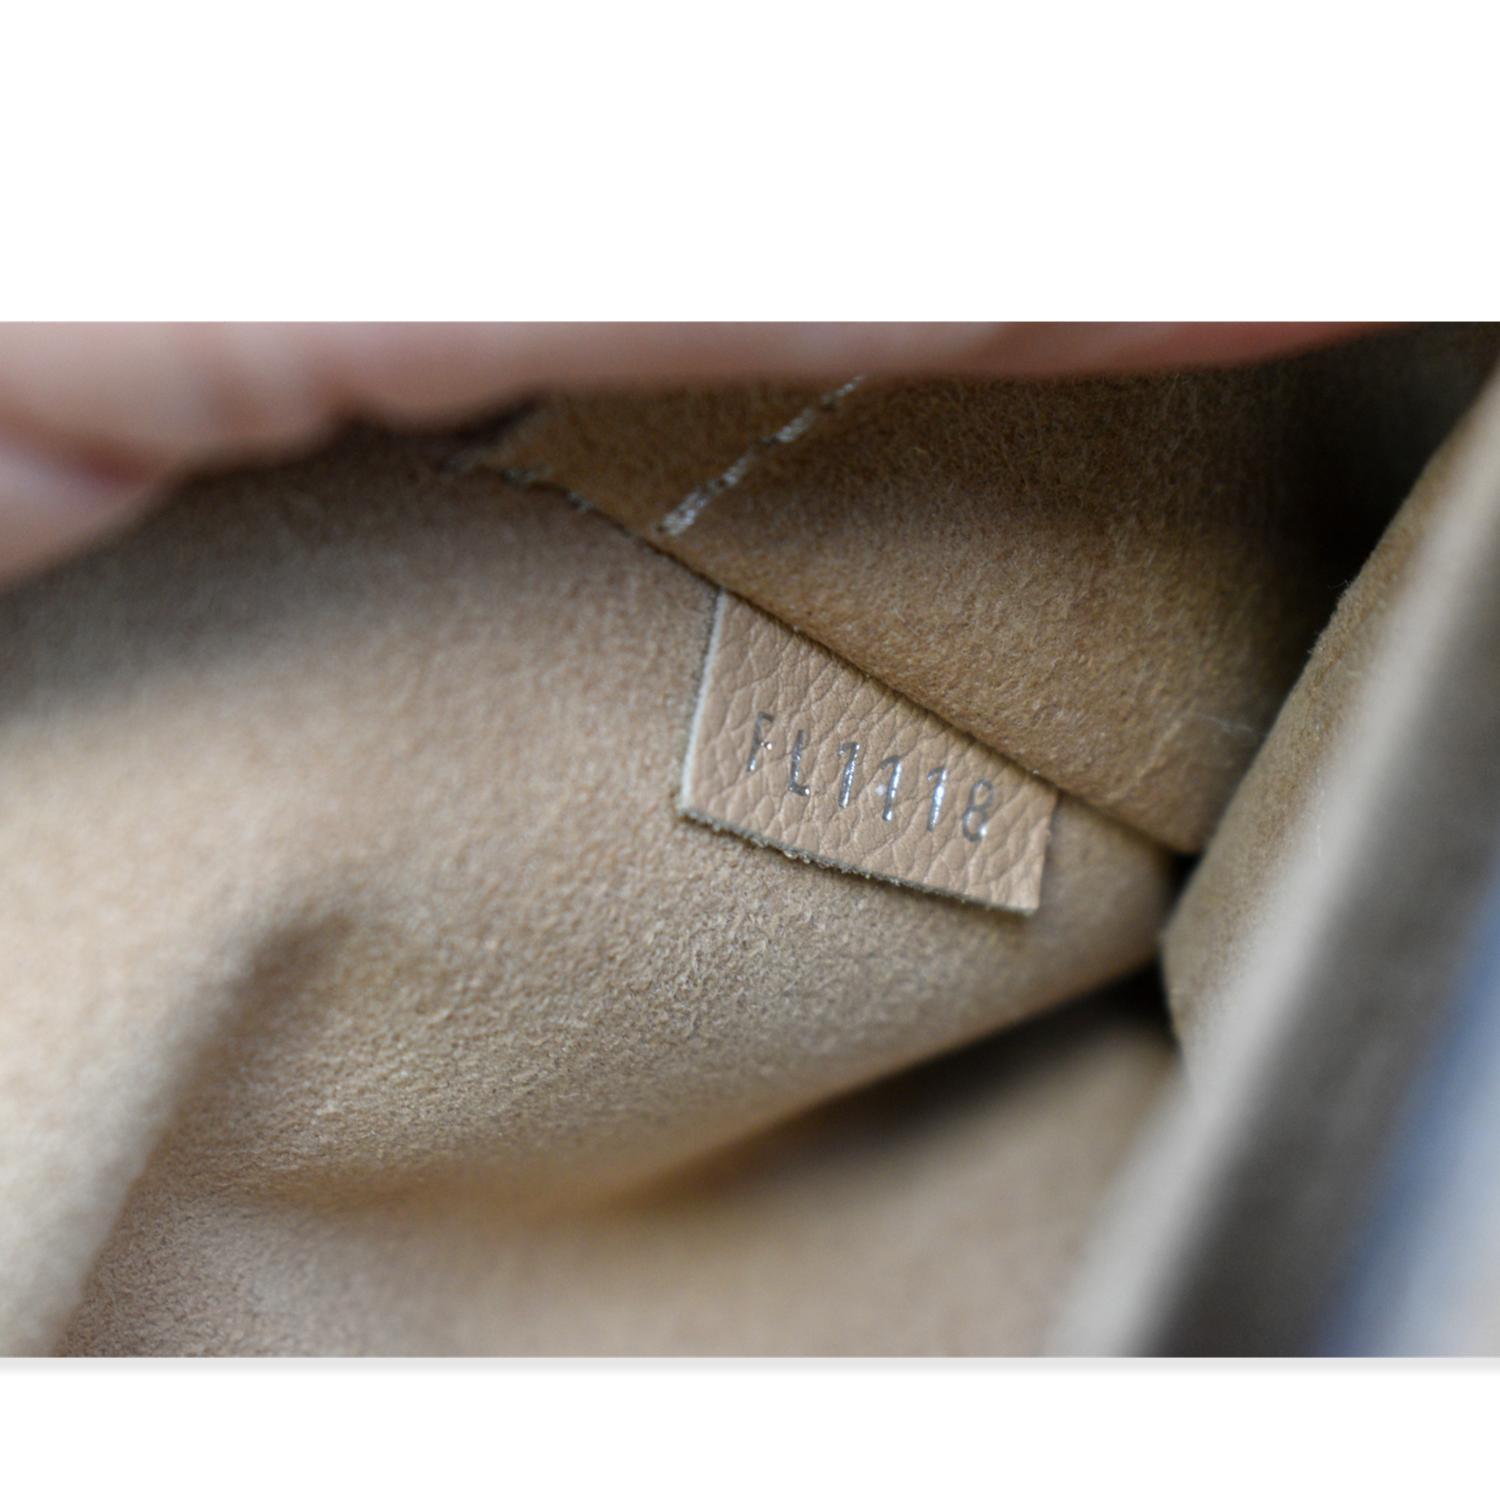 Louis Vuitton MyLockMe Chain Bag Black Calf